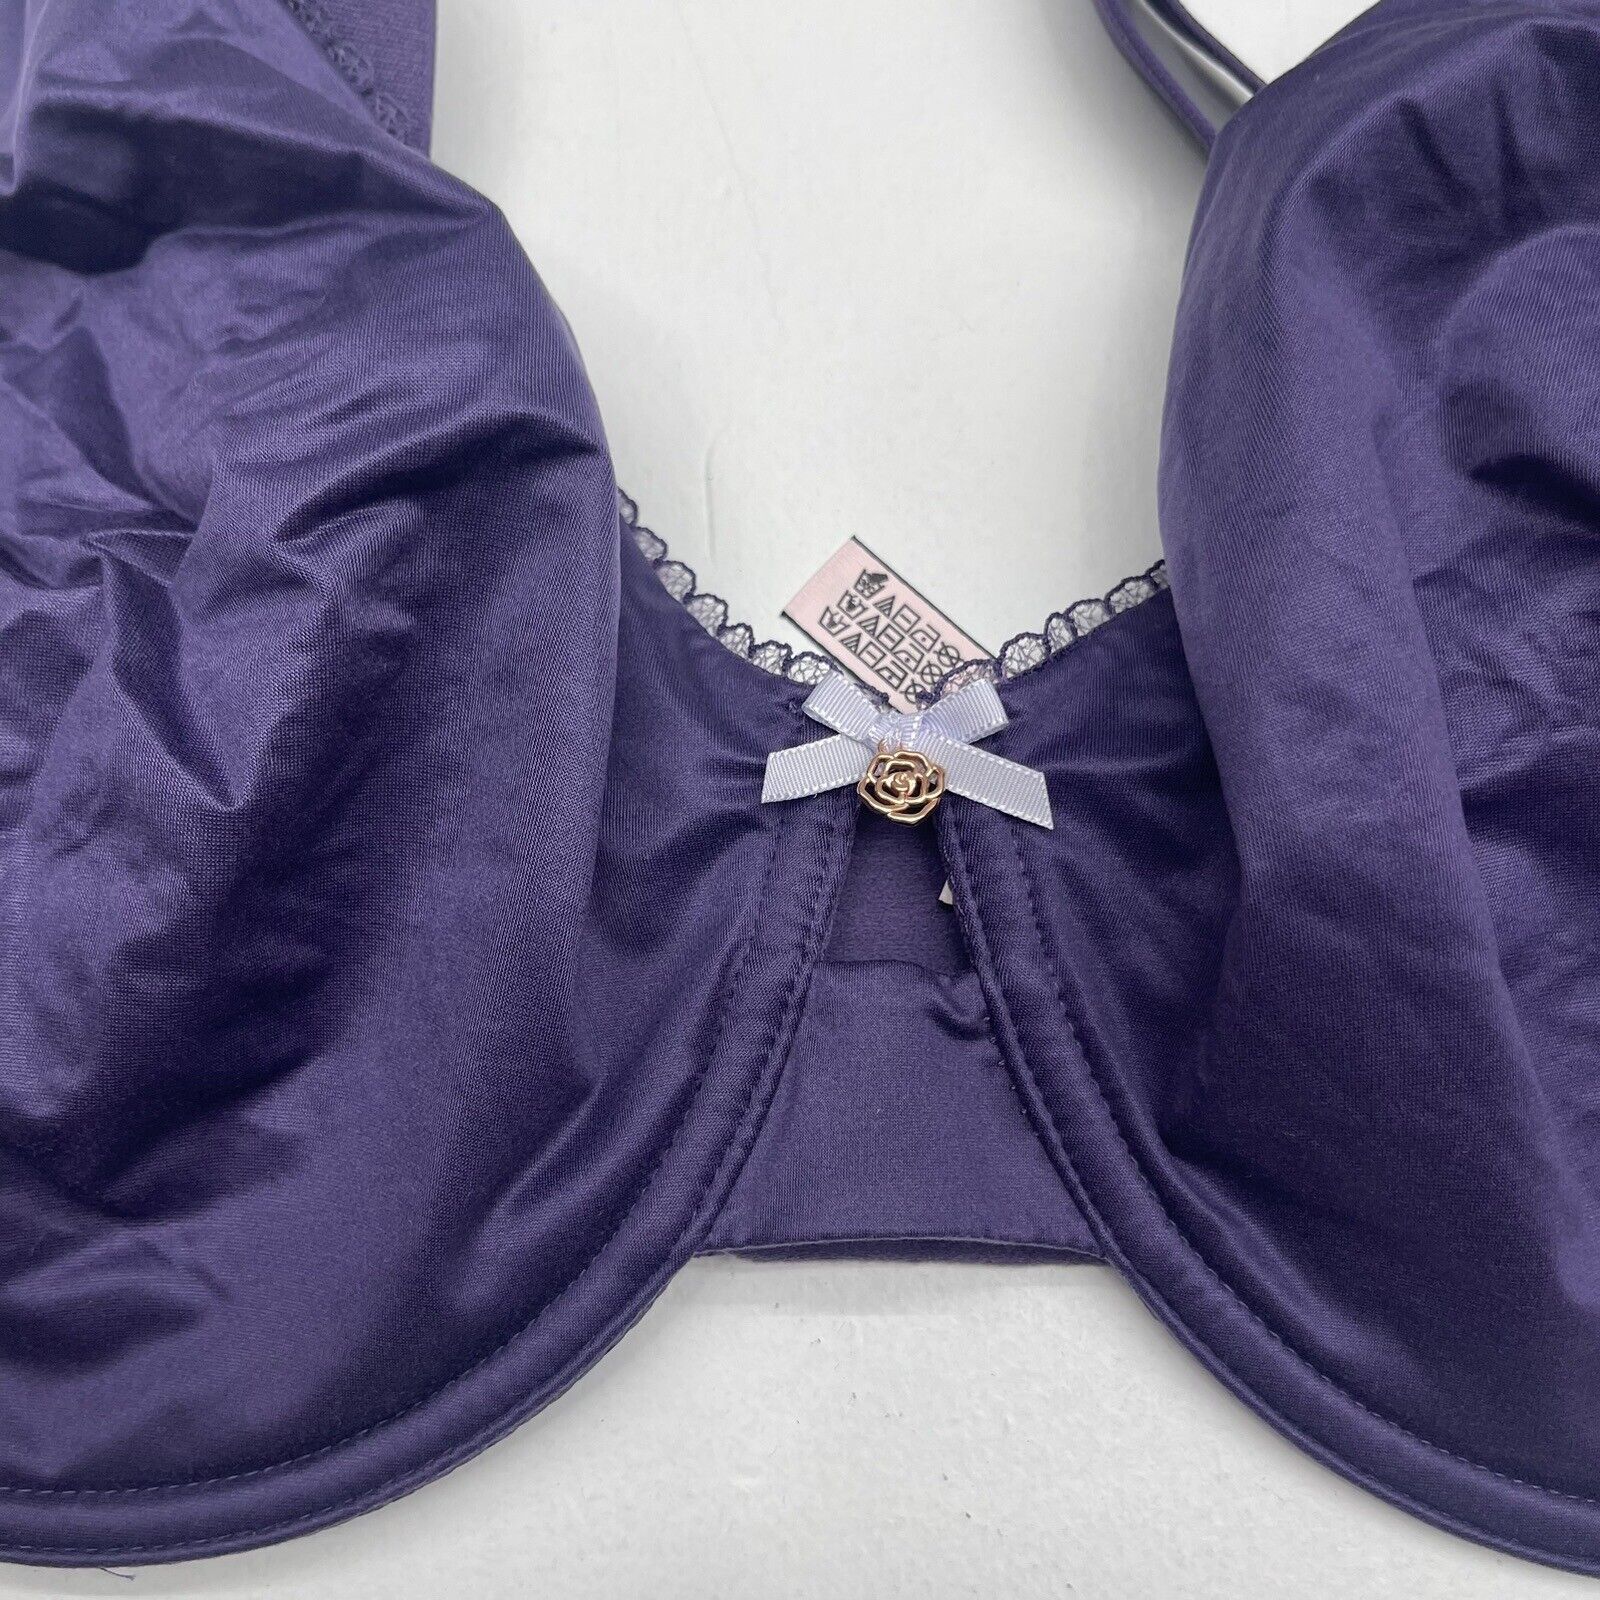 Victoria's Secret body by Victoria purple bra size 40DD